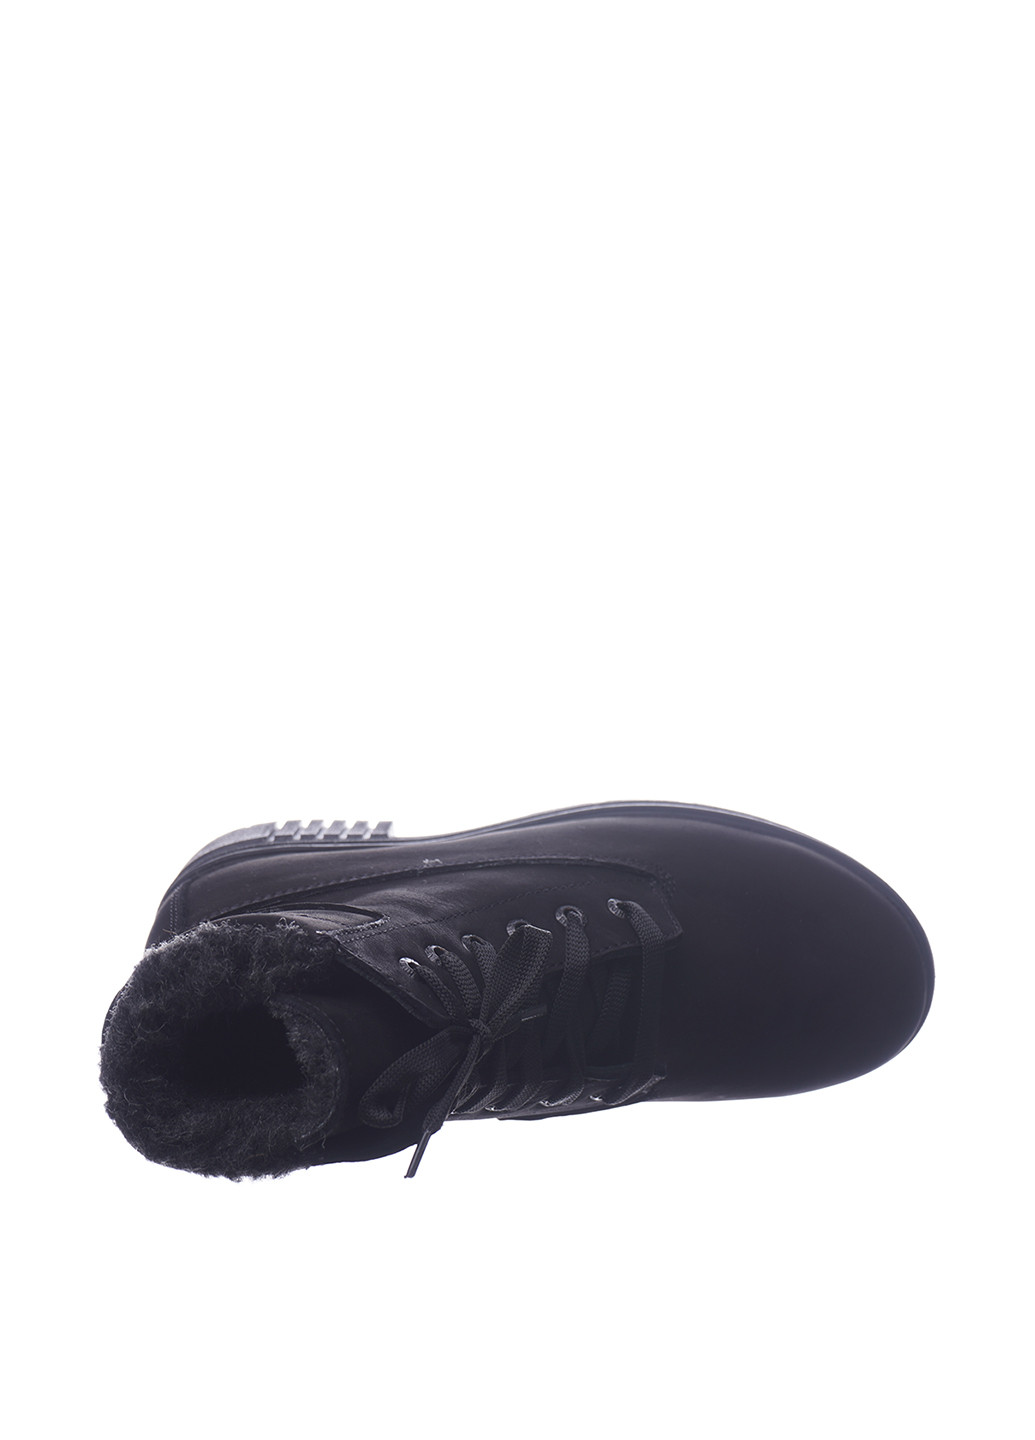 Зимние ботинки Libero без декора из натурального нубука